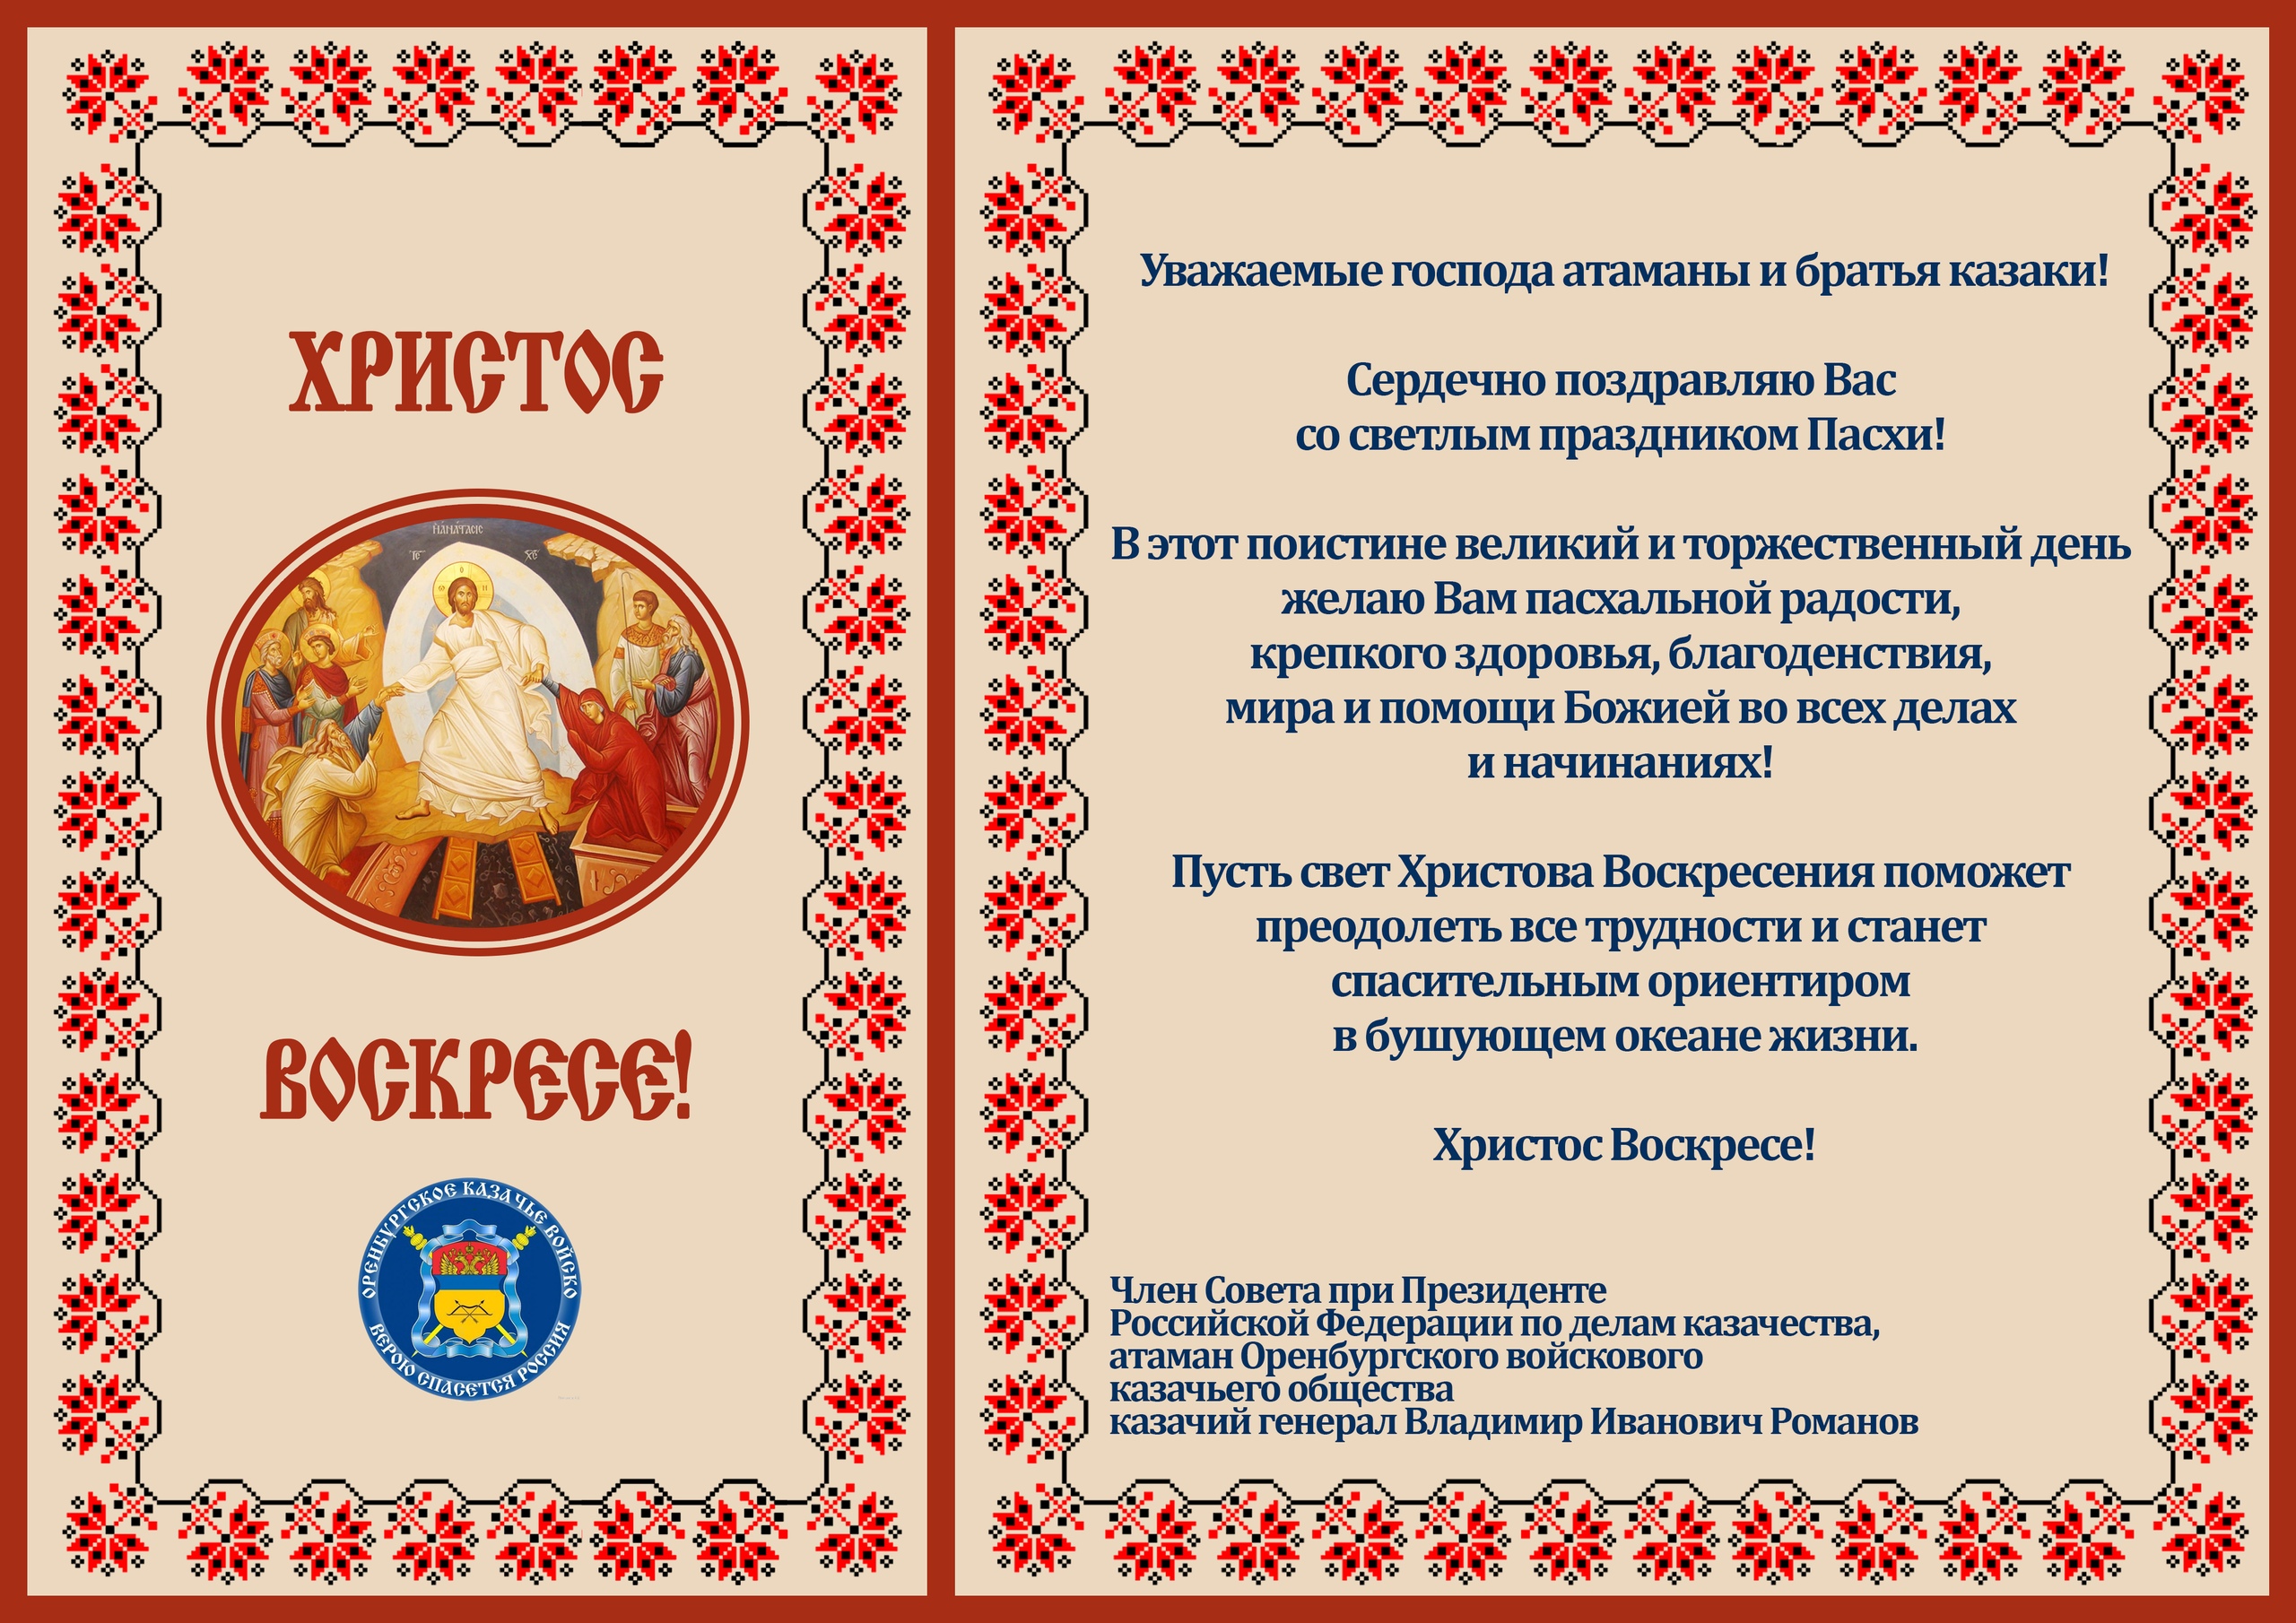 Атаман Оренбургского казачьего войска Владимир Иванович Романов поздравляет казаков с Пасхой